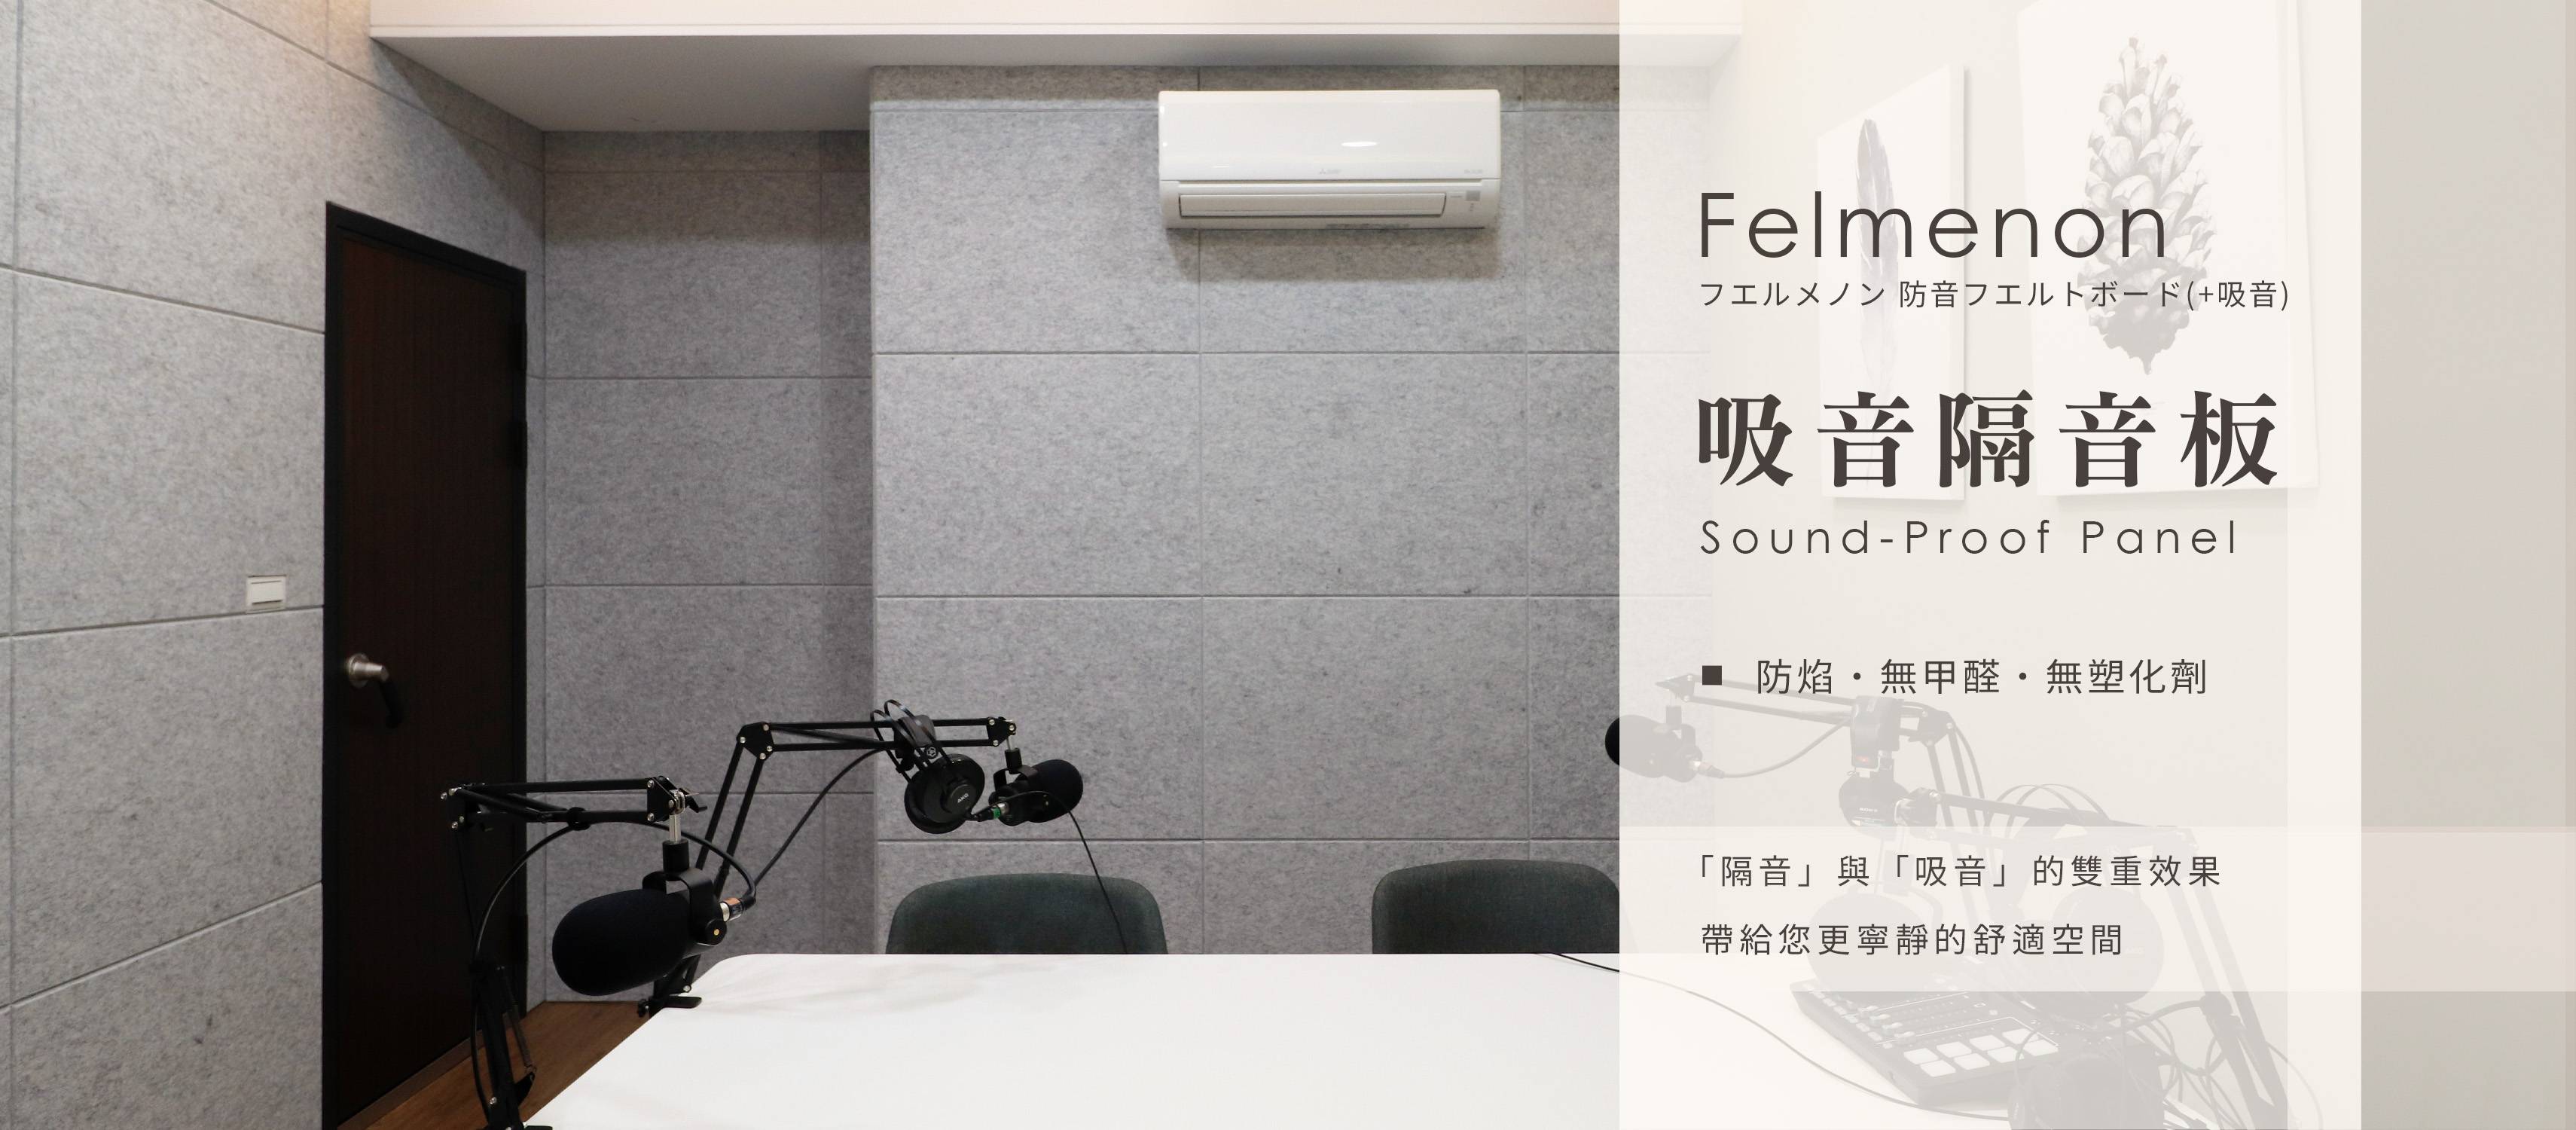 日本Felmenon菲米諾吸音隔音板-新隔音建材選擇